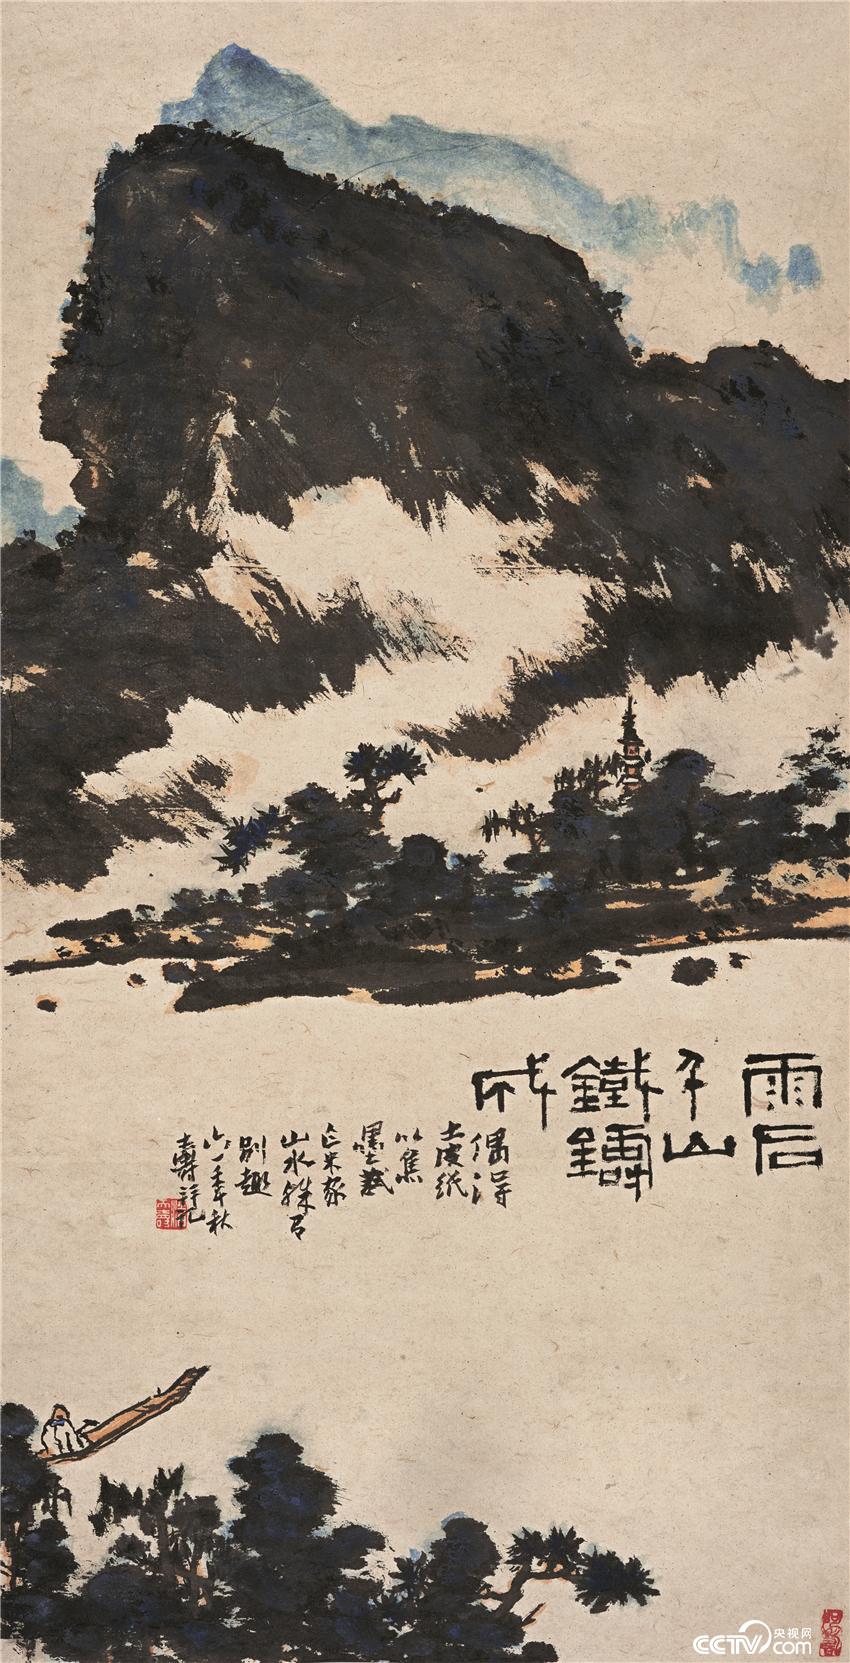 雨后千山铁铸成图  潘天寿 中国画 89.9×45.9cm 1961年 